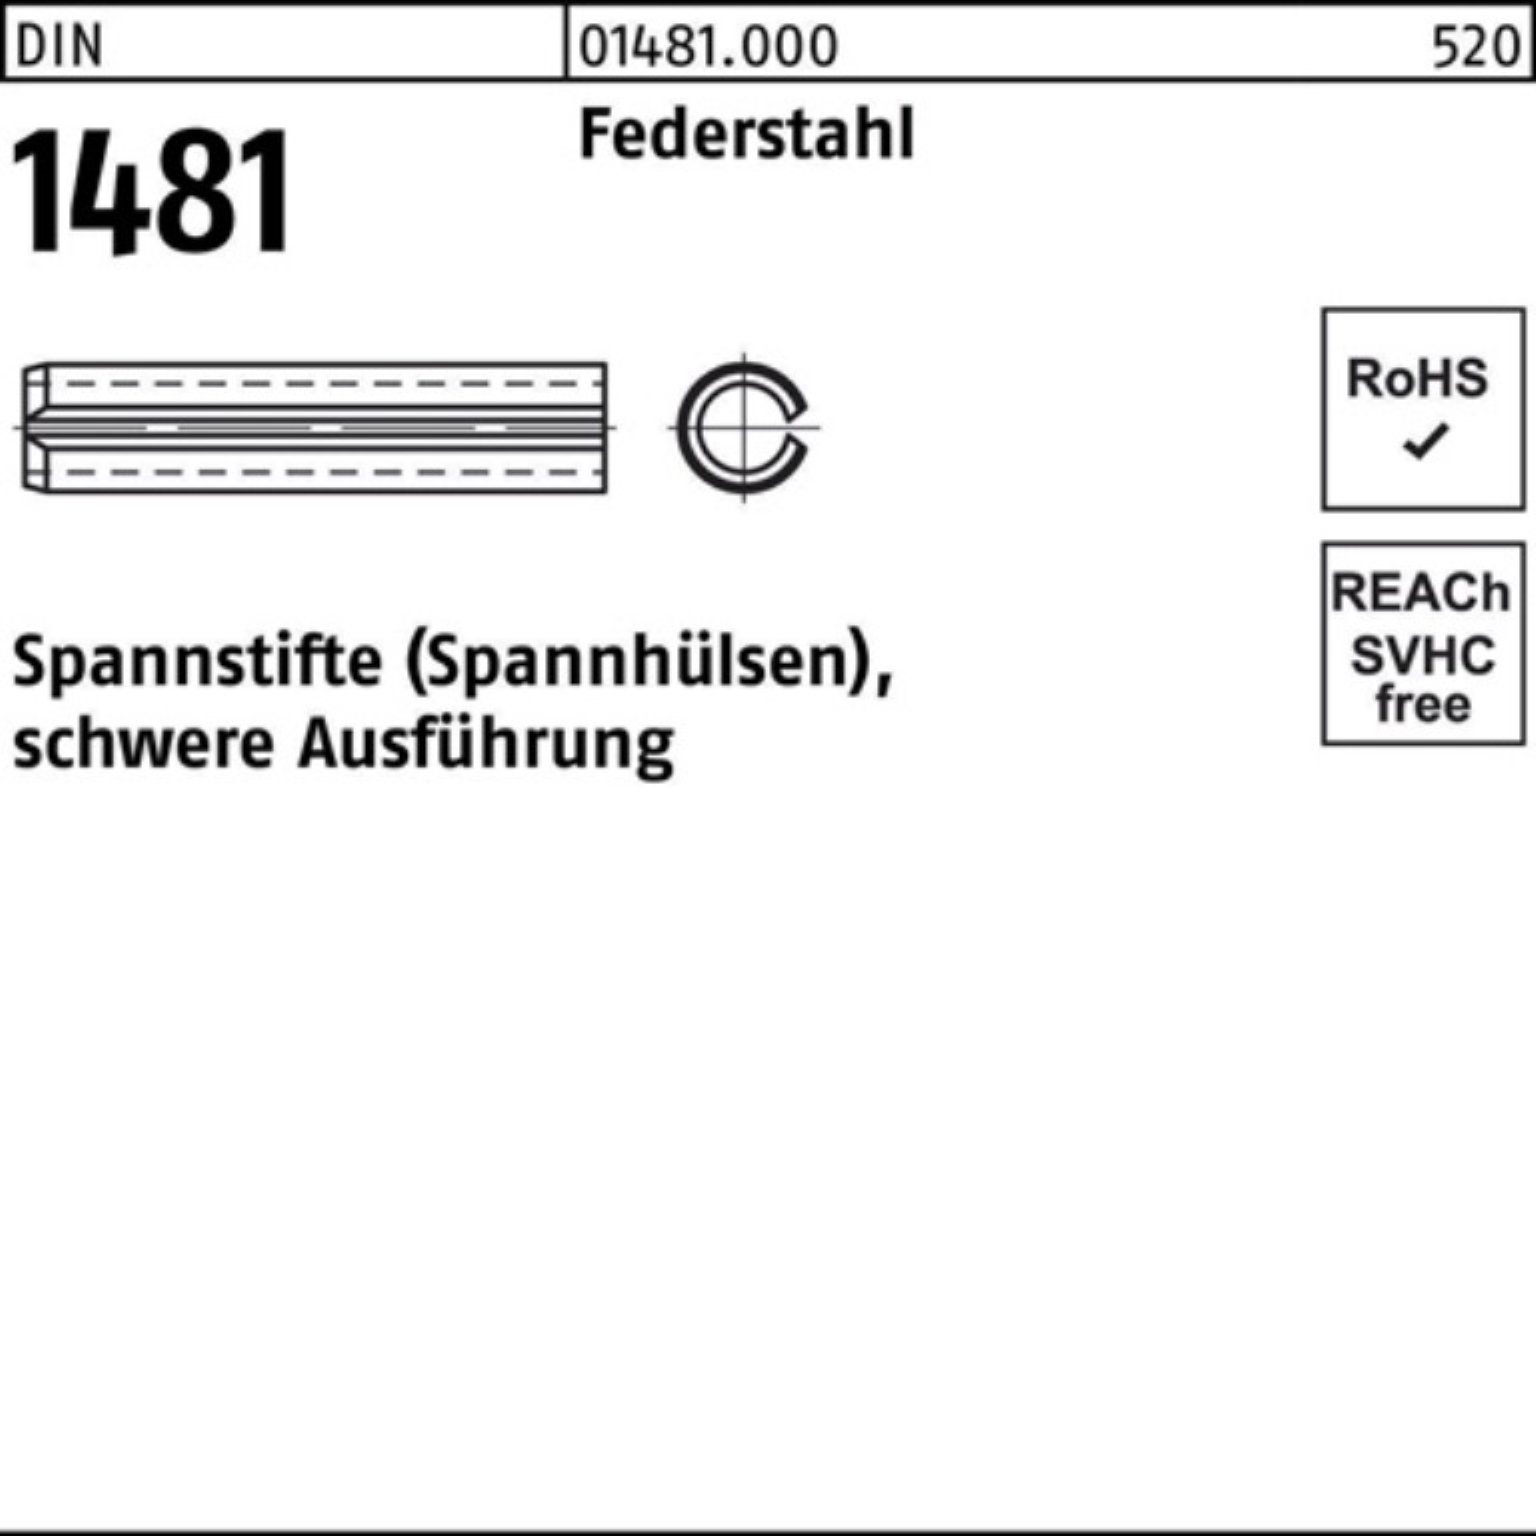 Reyher Spannstift 200er Pack Spannstift DIN 1481 1x 5 Federstahl schwere Ausführung 200